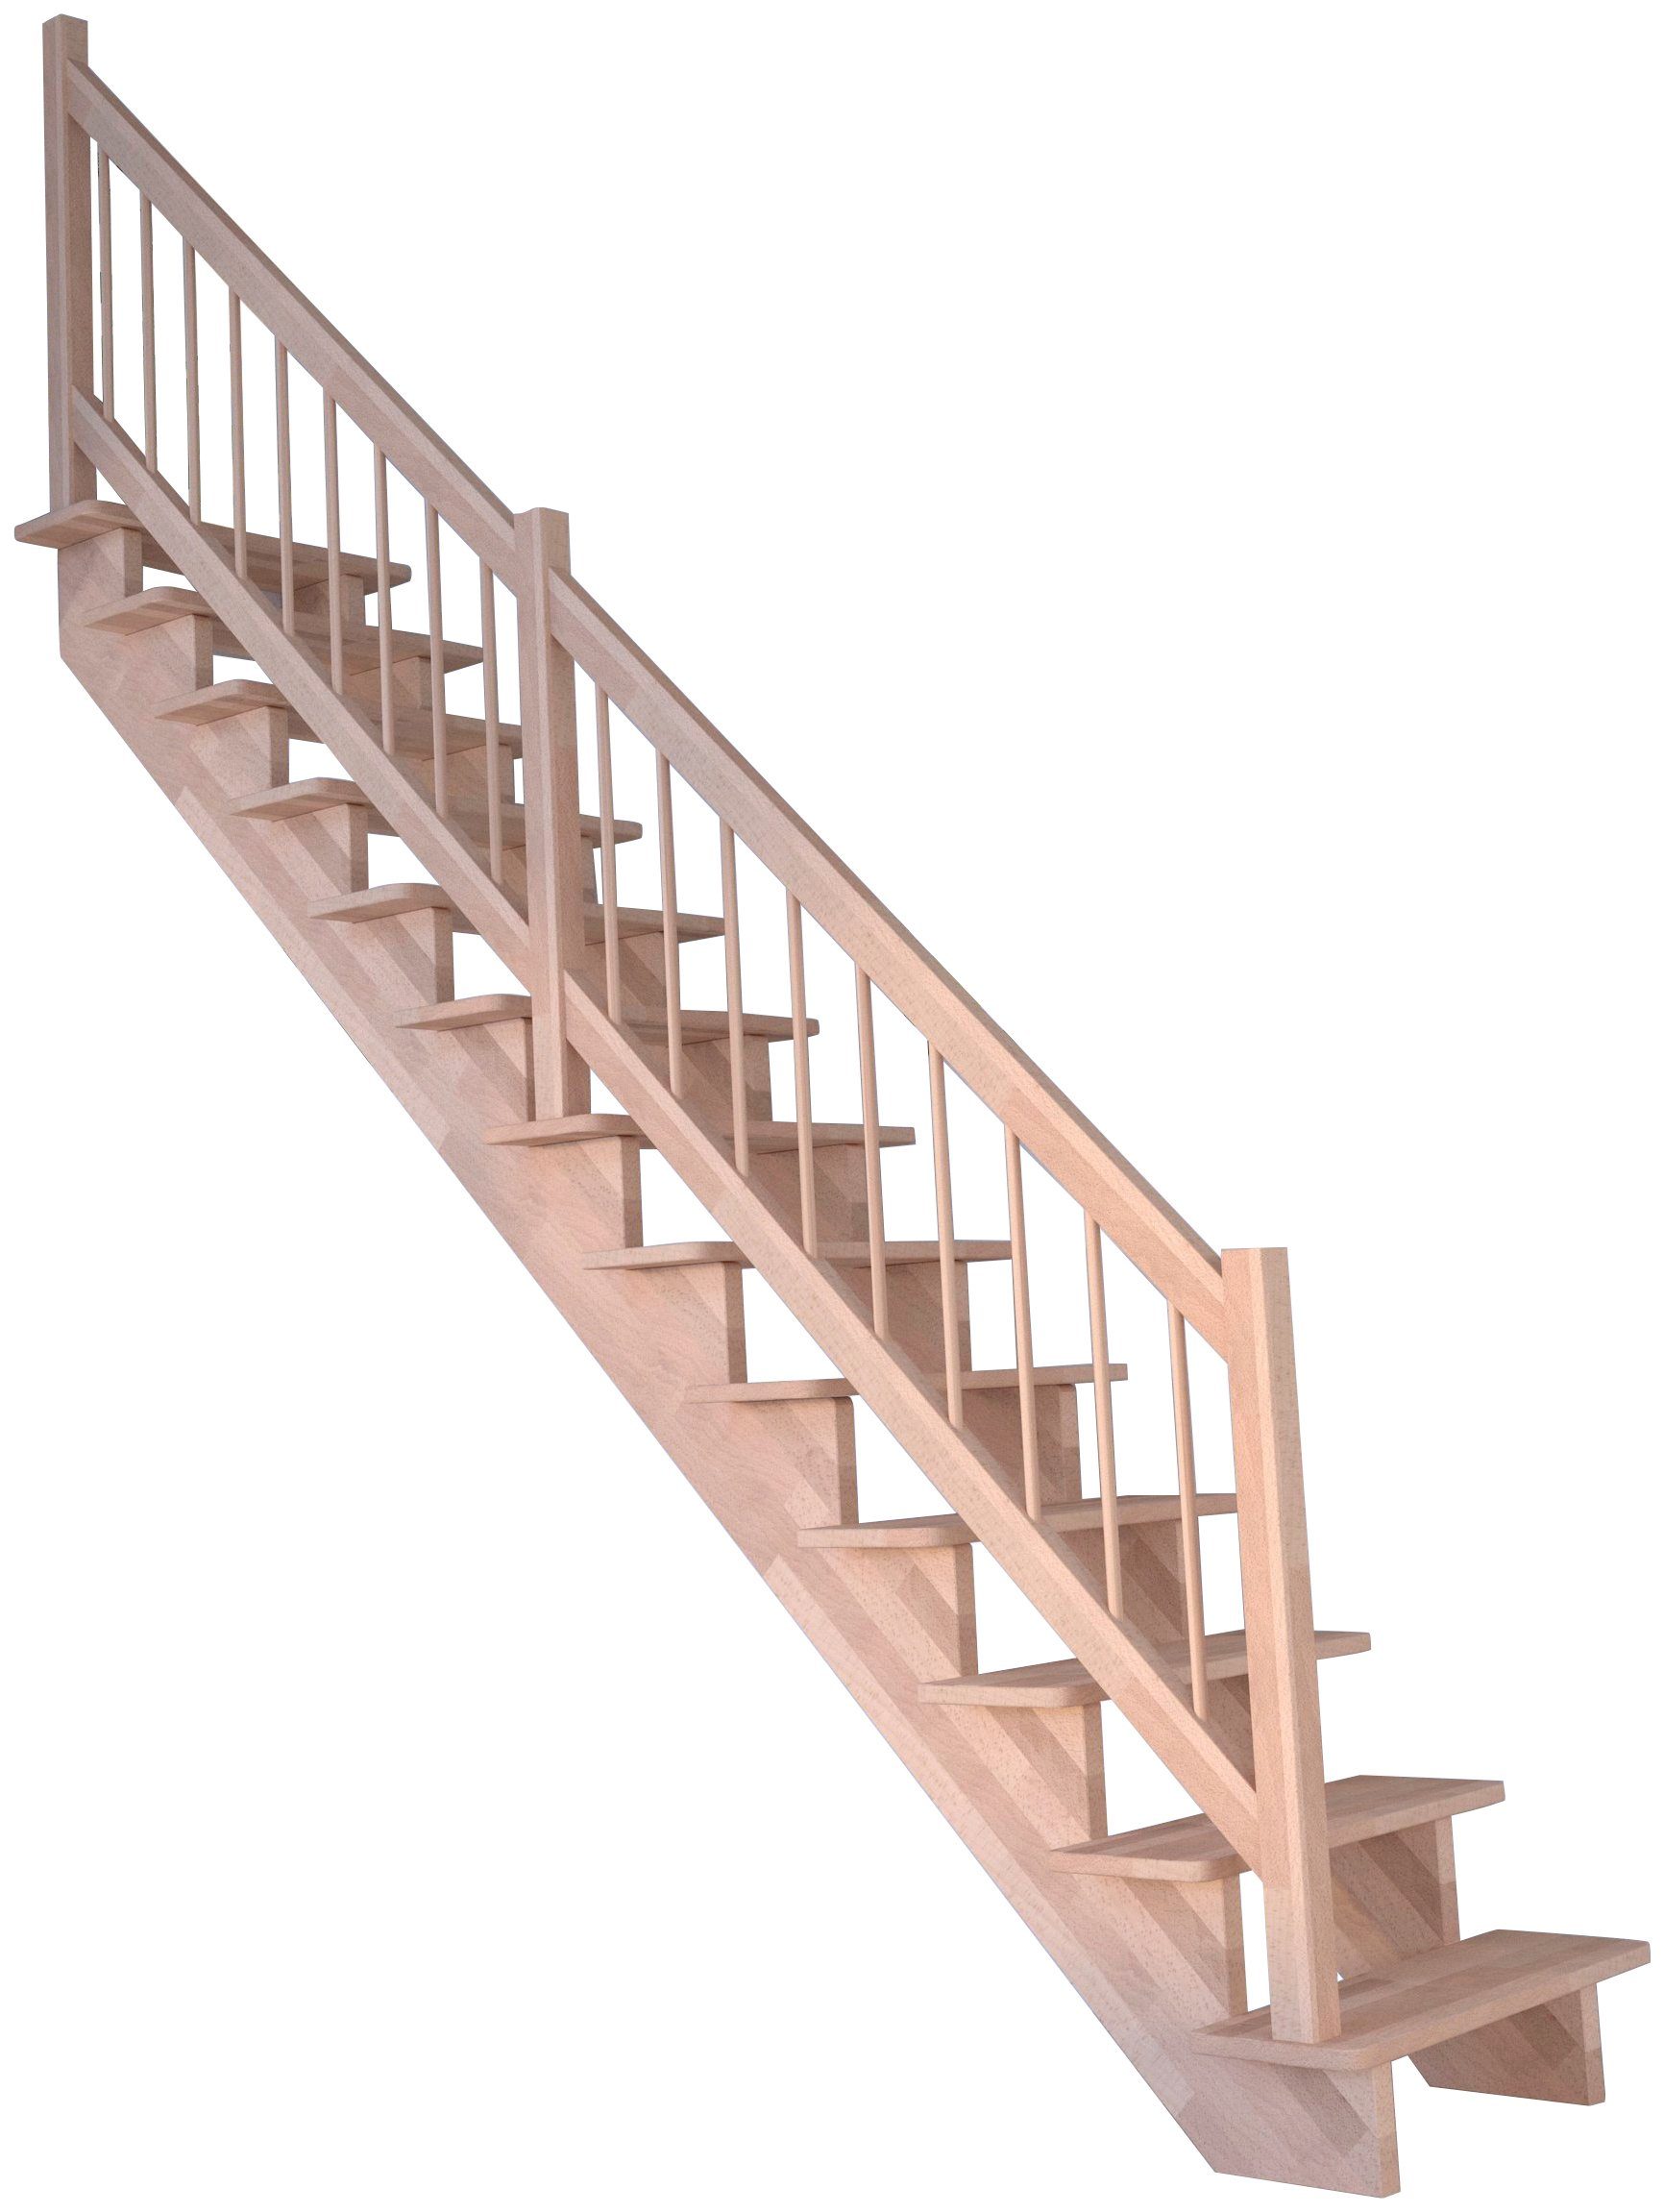 Starwood Systemtreppe Massivholz Lindos, Holz-Holz Design Geländer, für Geschosshöhen bis 300 cm, Stufen offen, Durchgehende Wangenteile